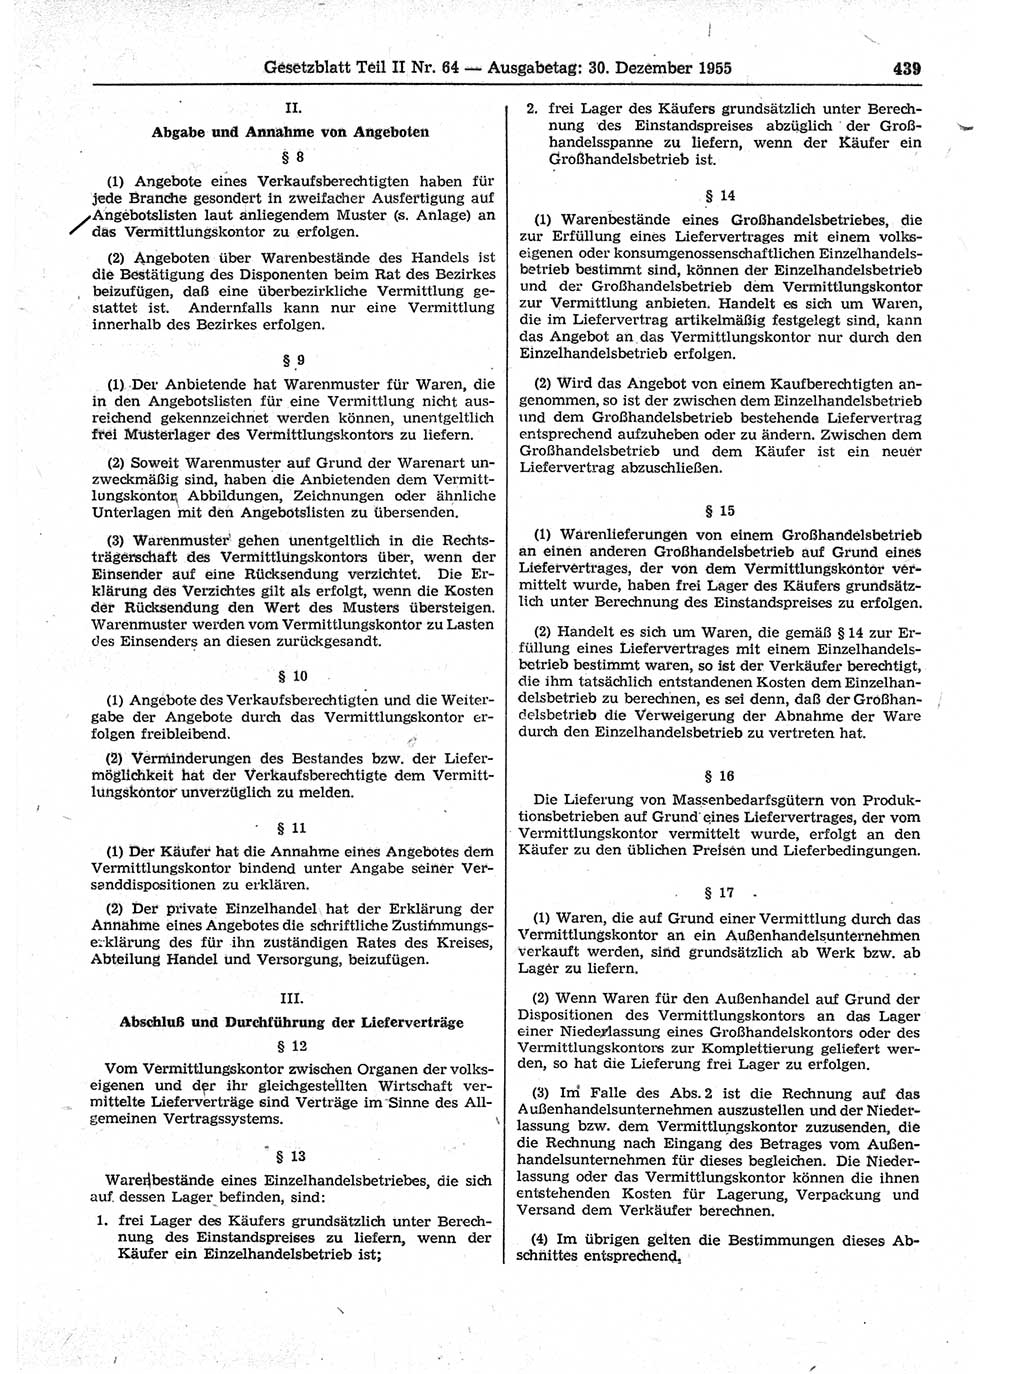 Gesetzblatt (GBl.) der Deutschen Demokratischen Republik (DDR) Teil ⅠⅠ 1955, Seite 439 (GBl. DDR ⅠⅠ 1955, S. 439)